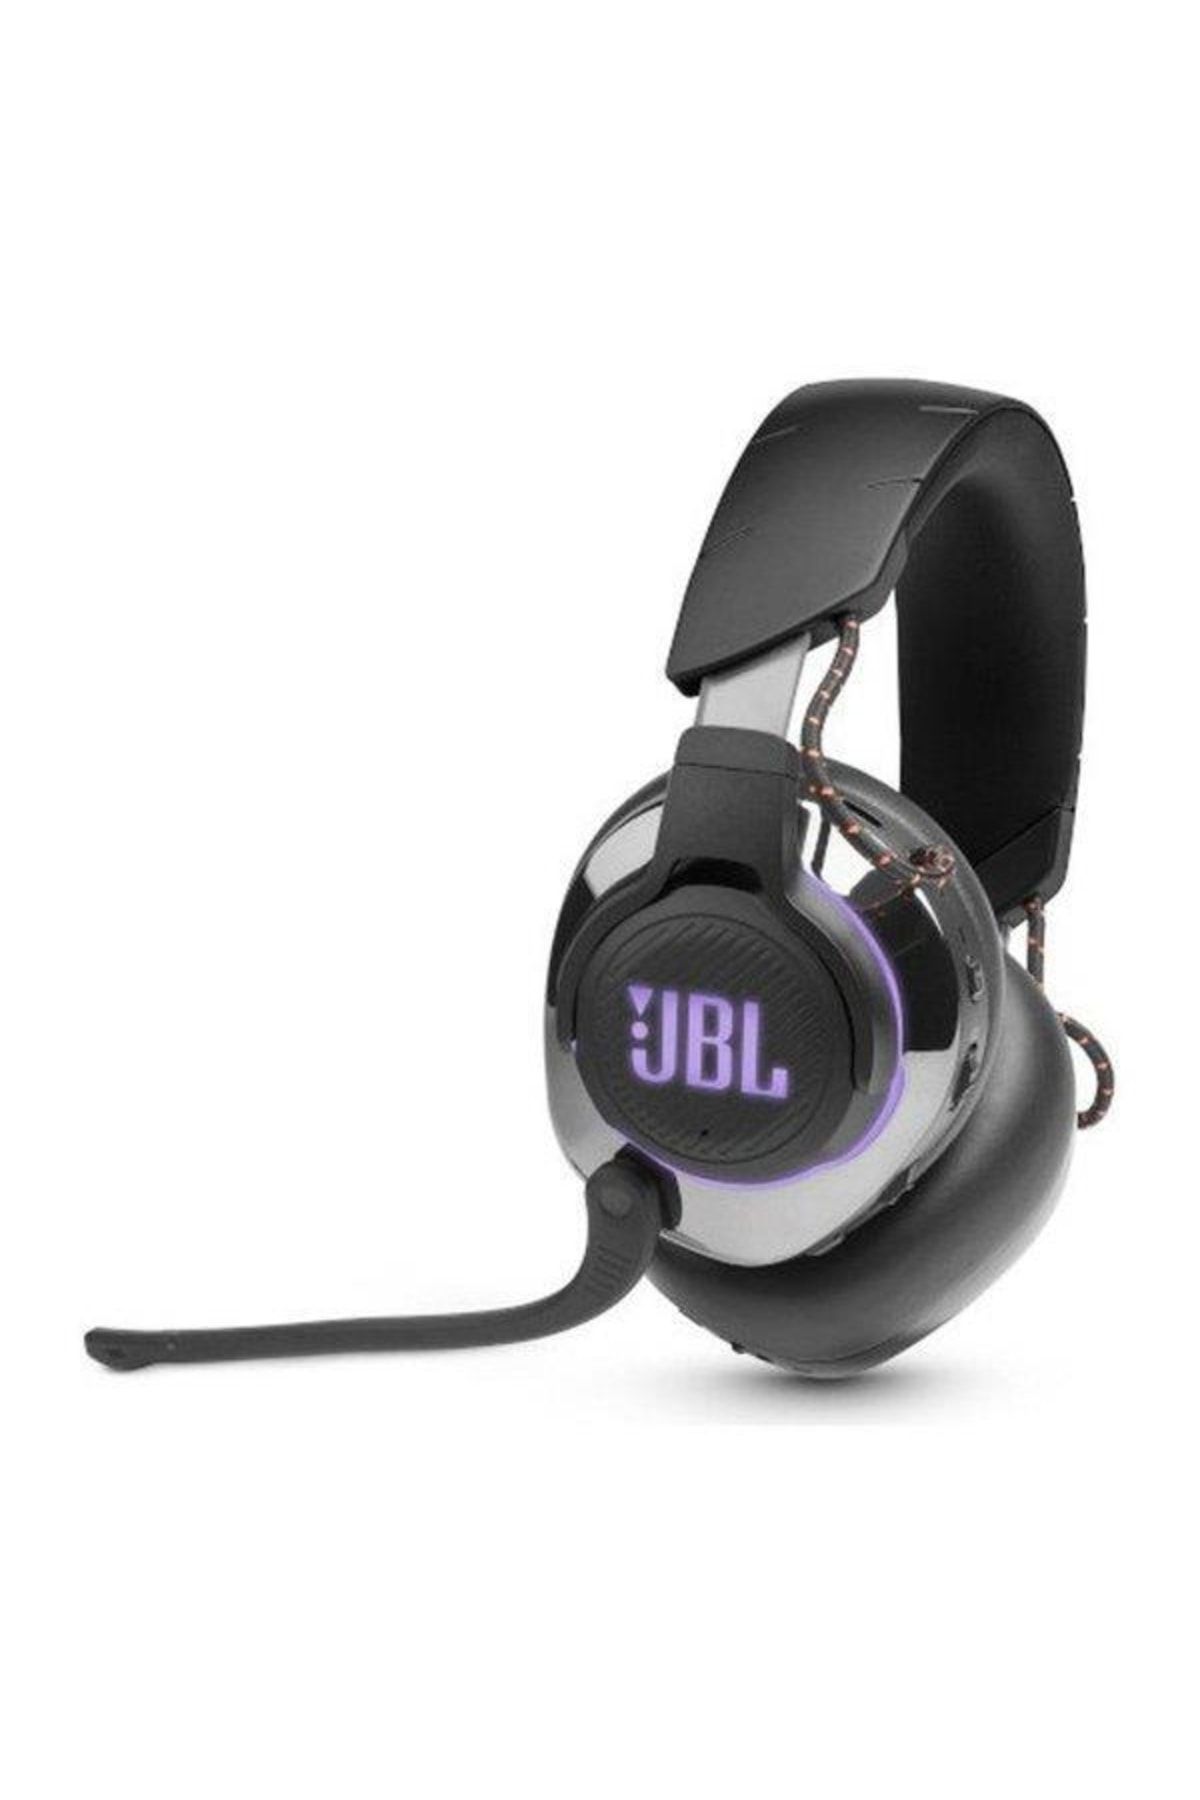 JBL Quantum 810 Miikrofonlu Oyuncu Kulaklğı